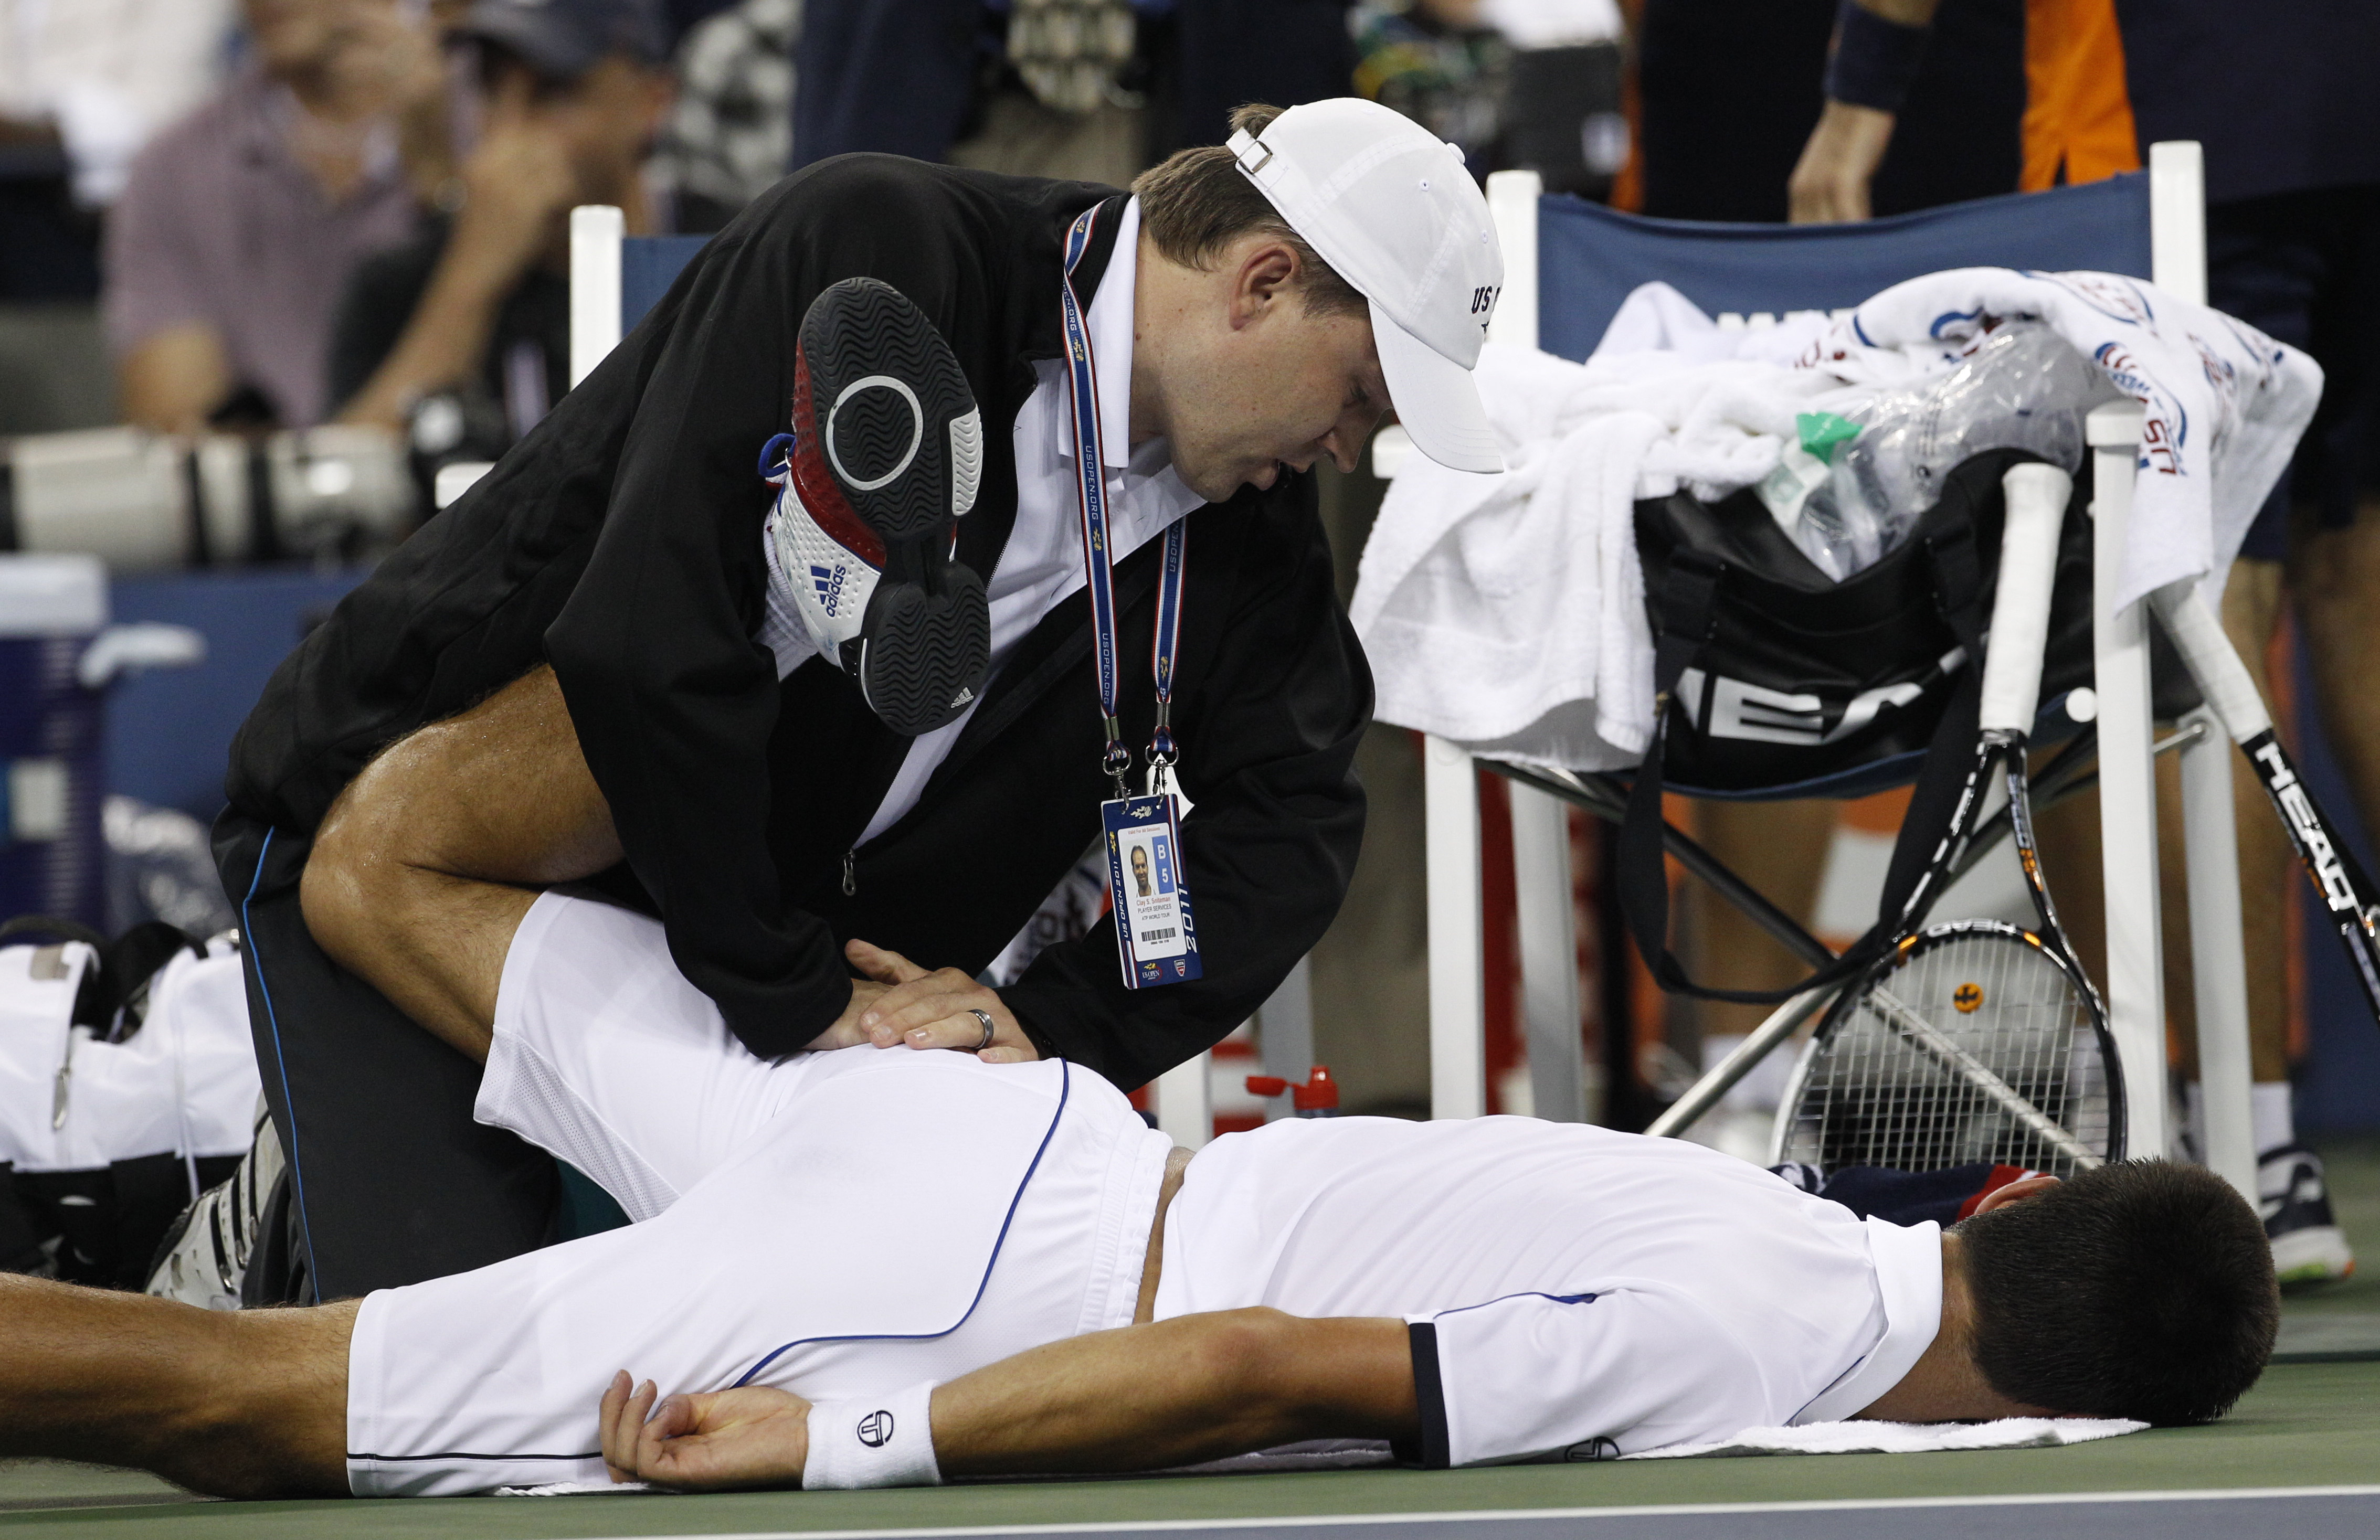 Trots enorm trötthet kämpade Djokovic hela vägen in över mållinjen.